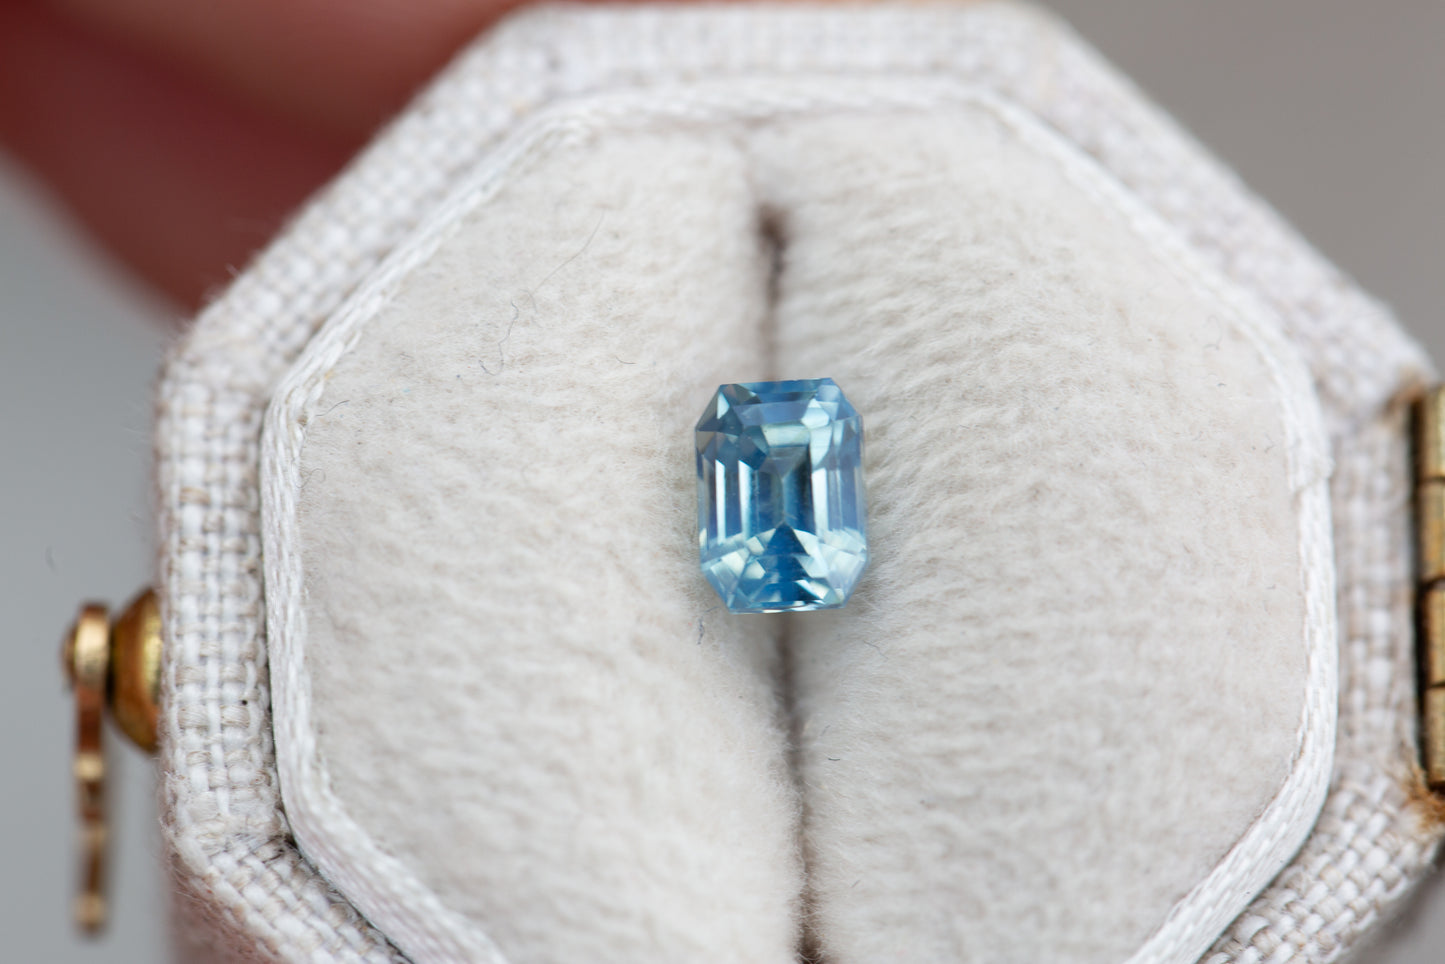 .9ct emerald cut opalescent blue sapphire